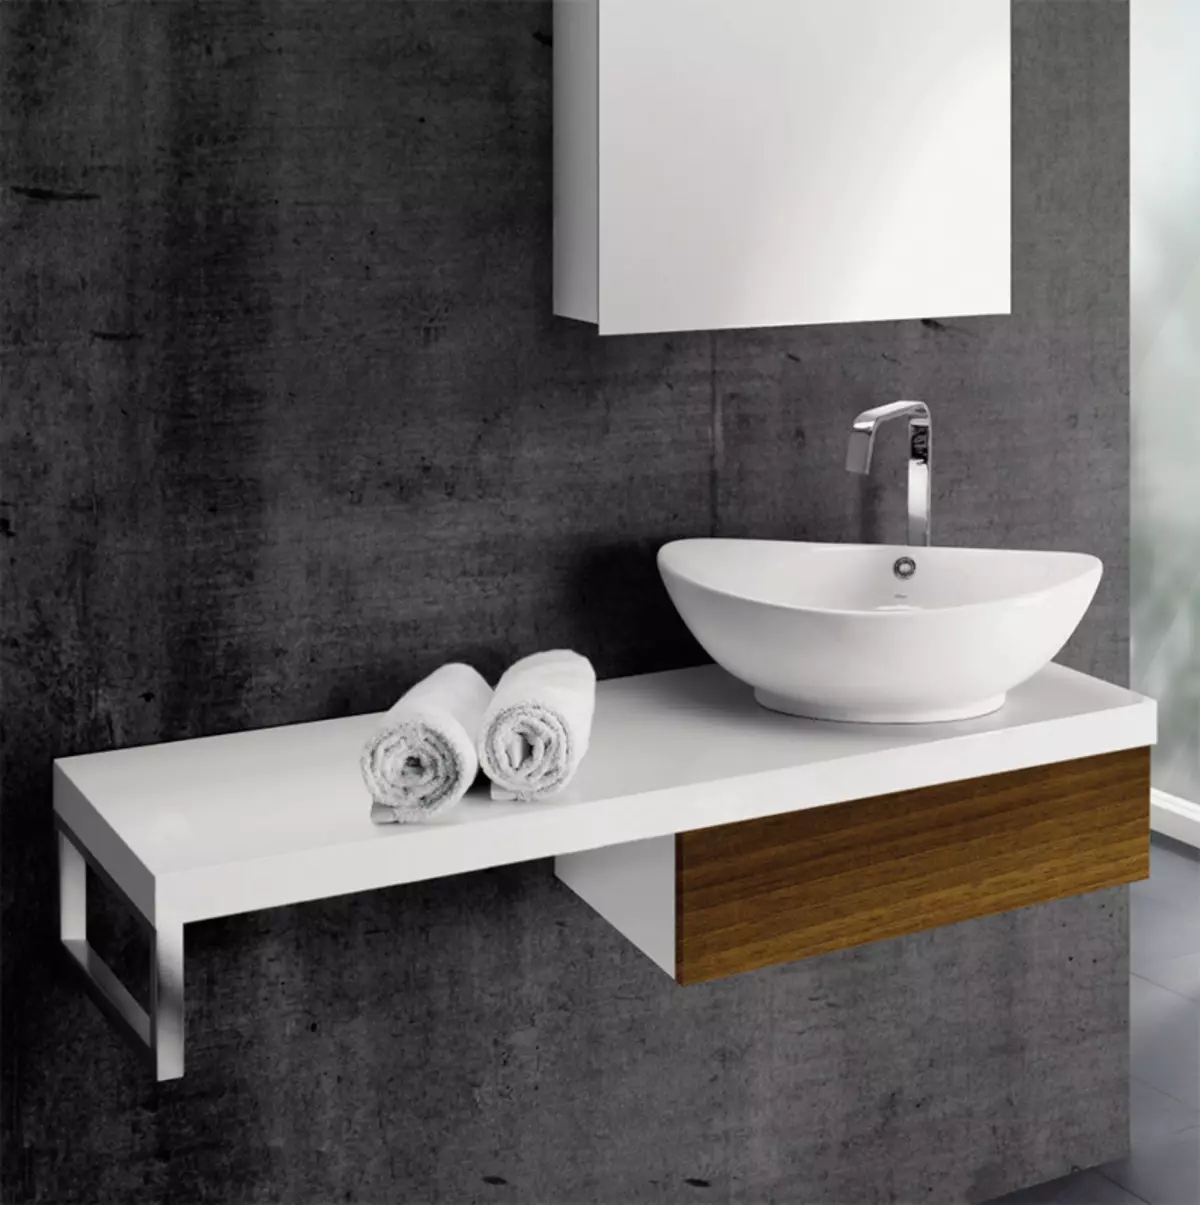 Soportes de baño: mesas de baño de variedades, descripción general de la marca IKEA y otros, soportes de madera y otros 10150_46